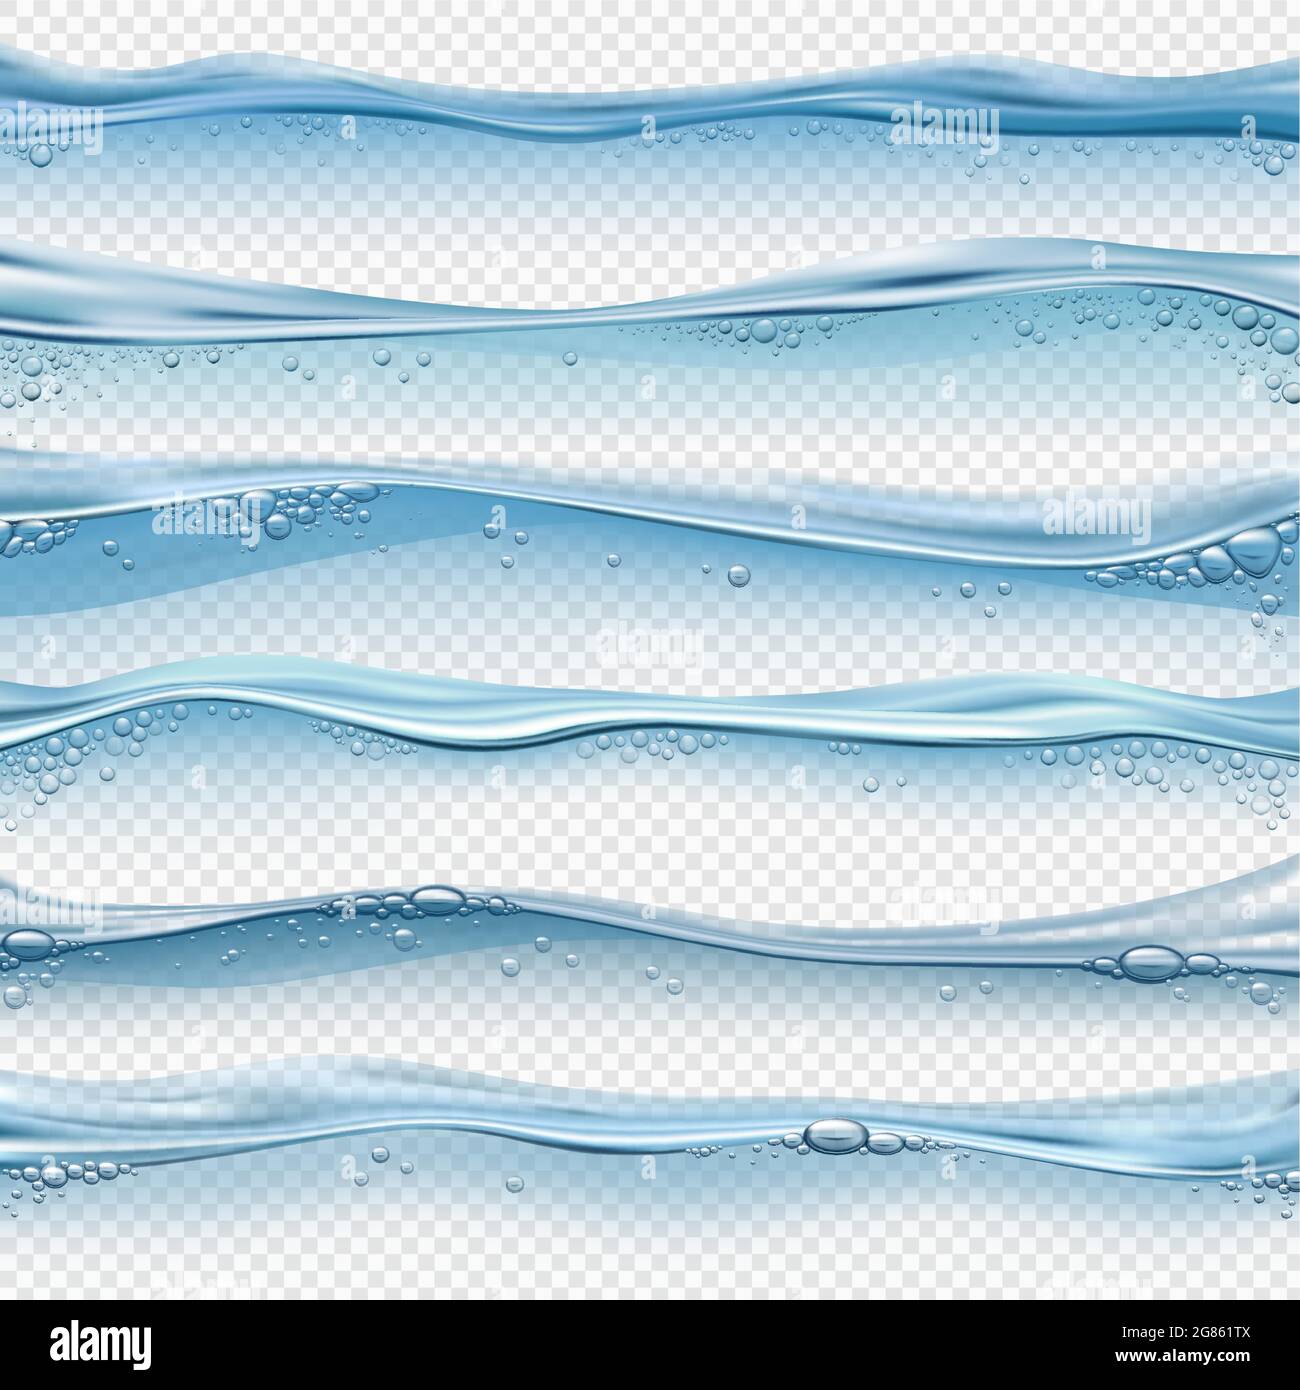 Realistische Wasserwellen. Wasser-, Ozean- oder Pooloberfläche mit Blasen und Spritzern. Wasserlinie und transparenter Unterwassereffekt-Vektor-Set Stock Vektor